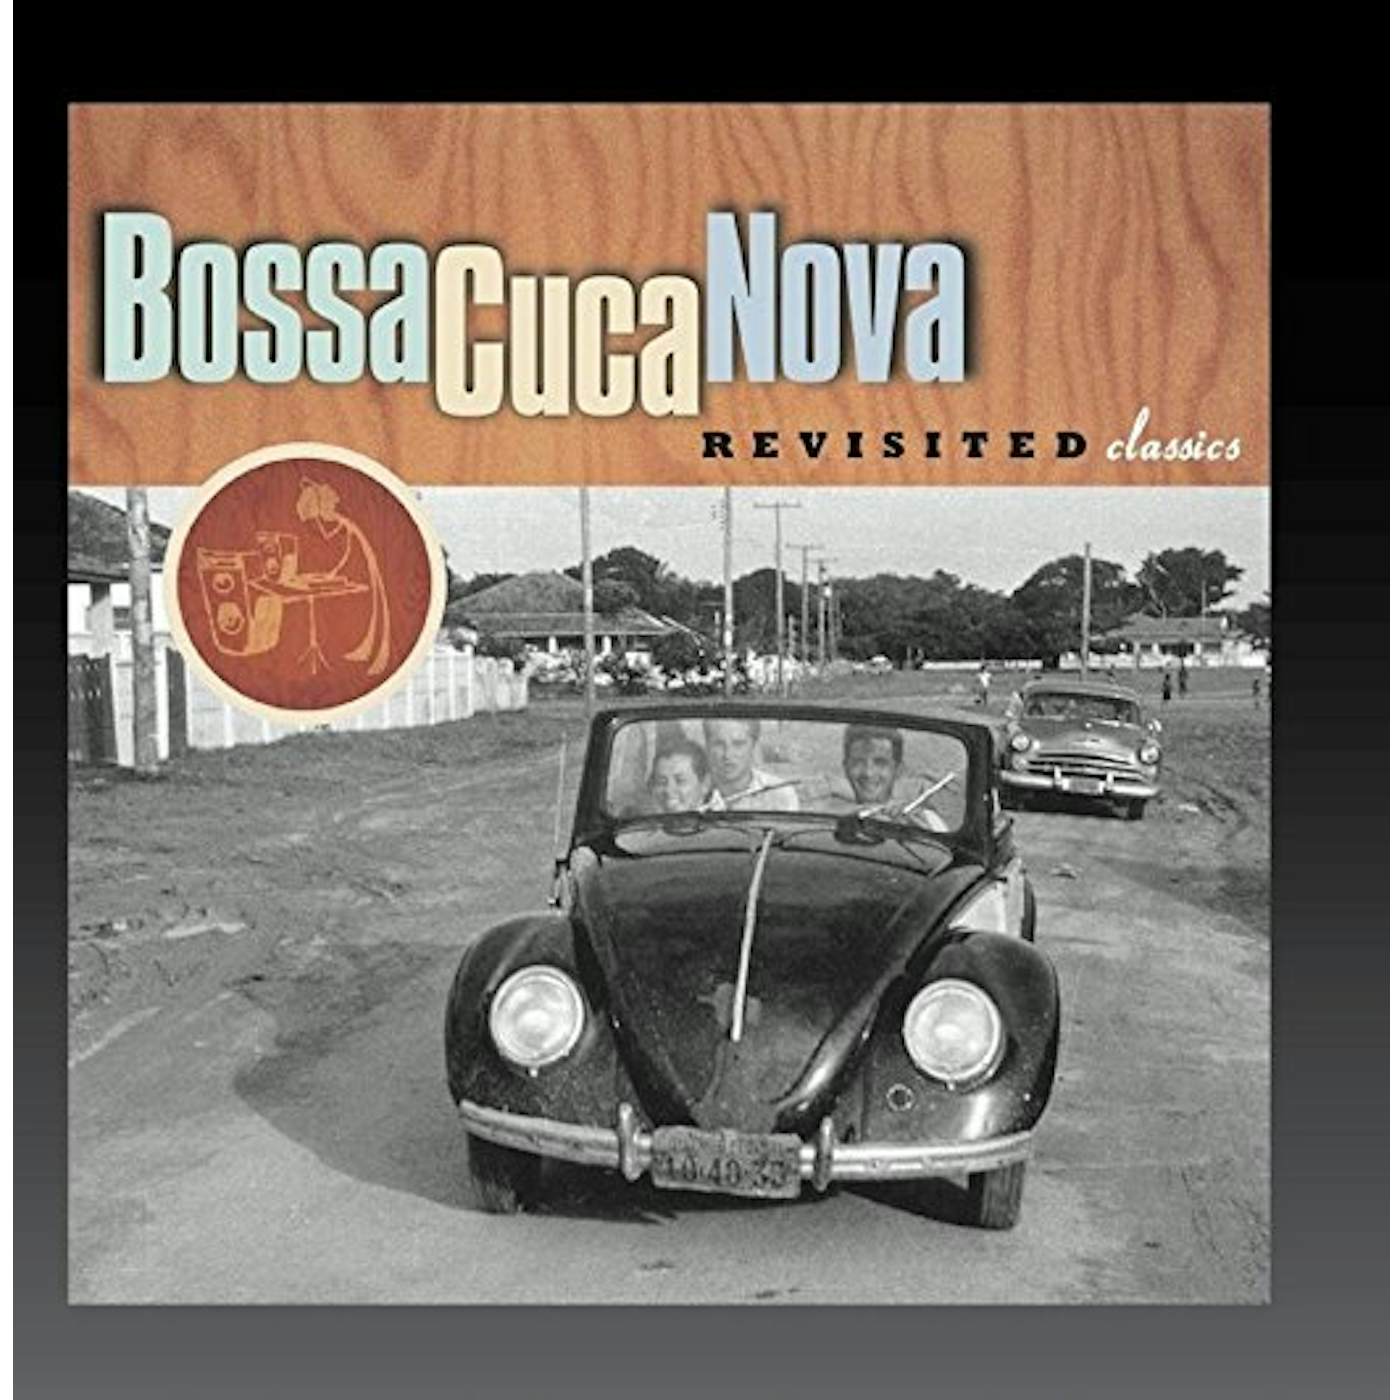 Bossacucanova REVISITED CLASSICS CD